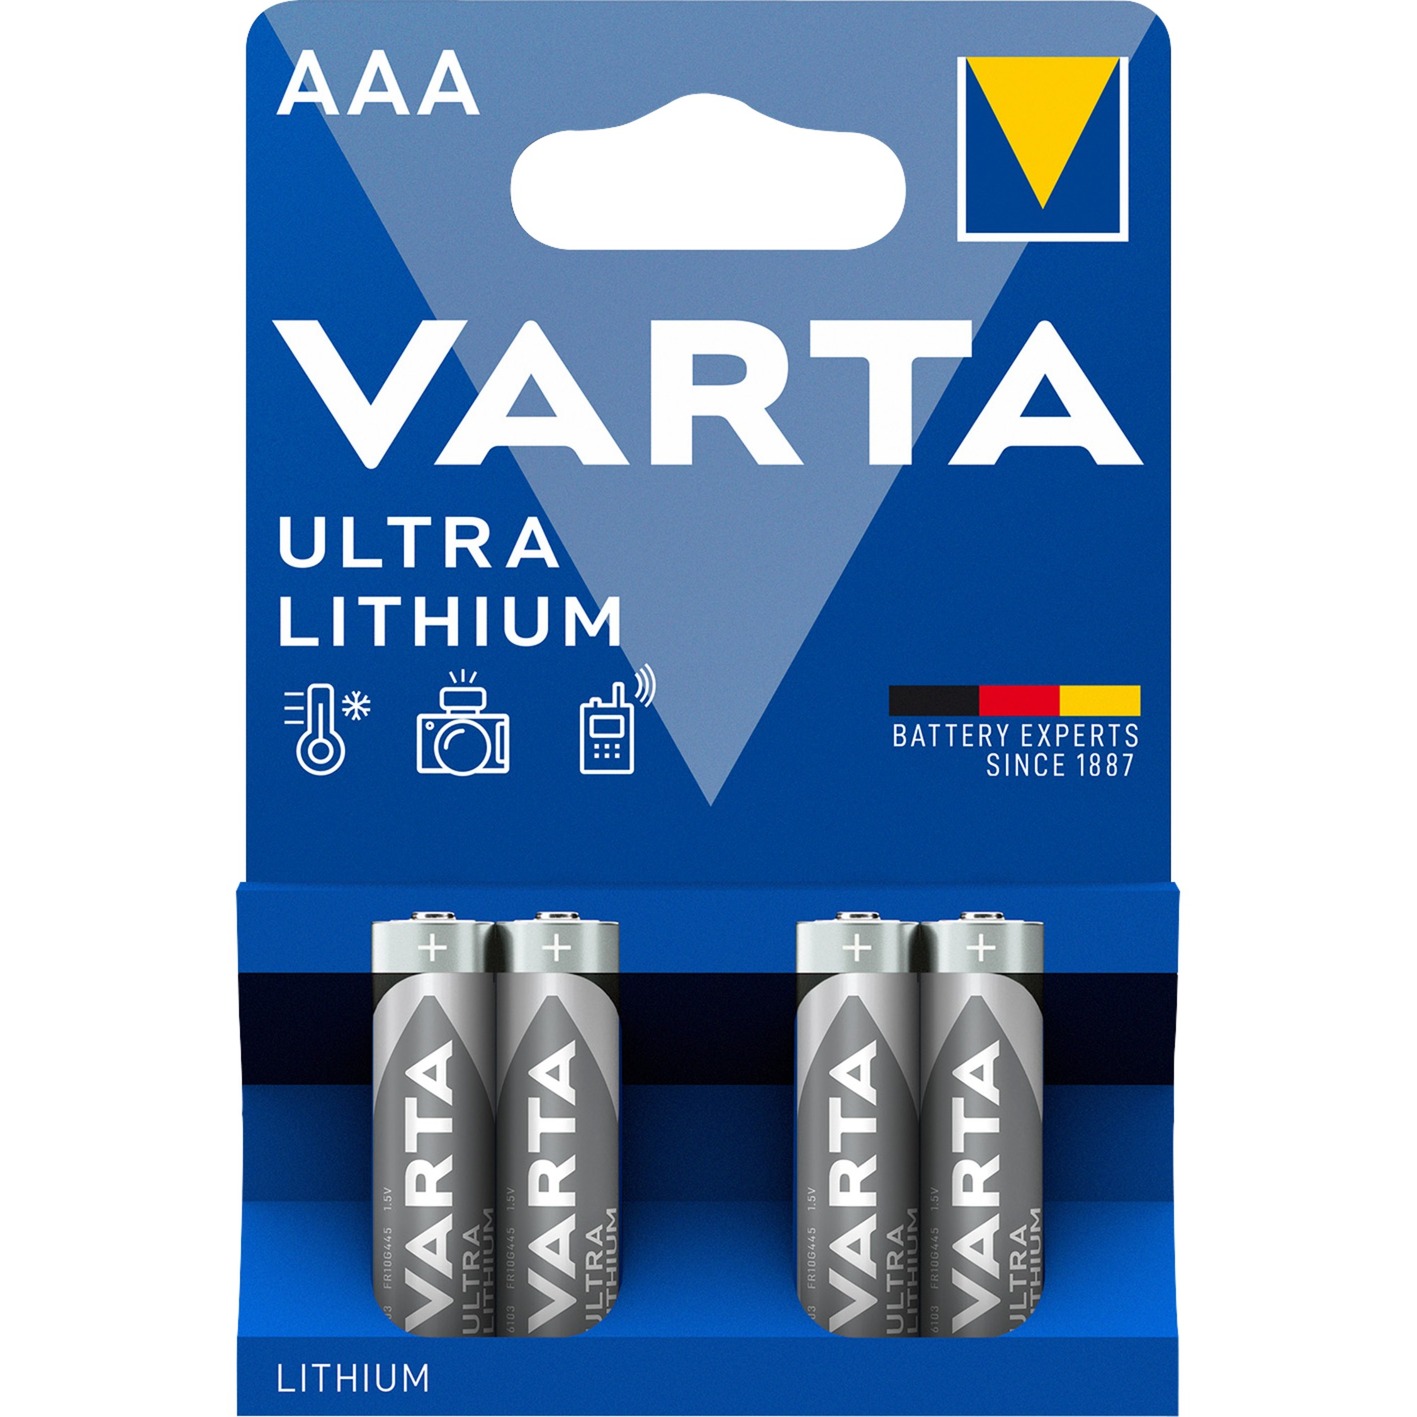 Image of Alternate - Lithium, Batterie online einkaufen bei Alternate